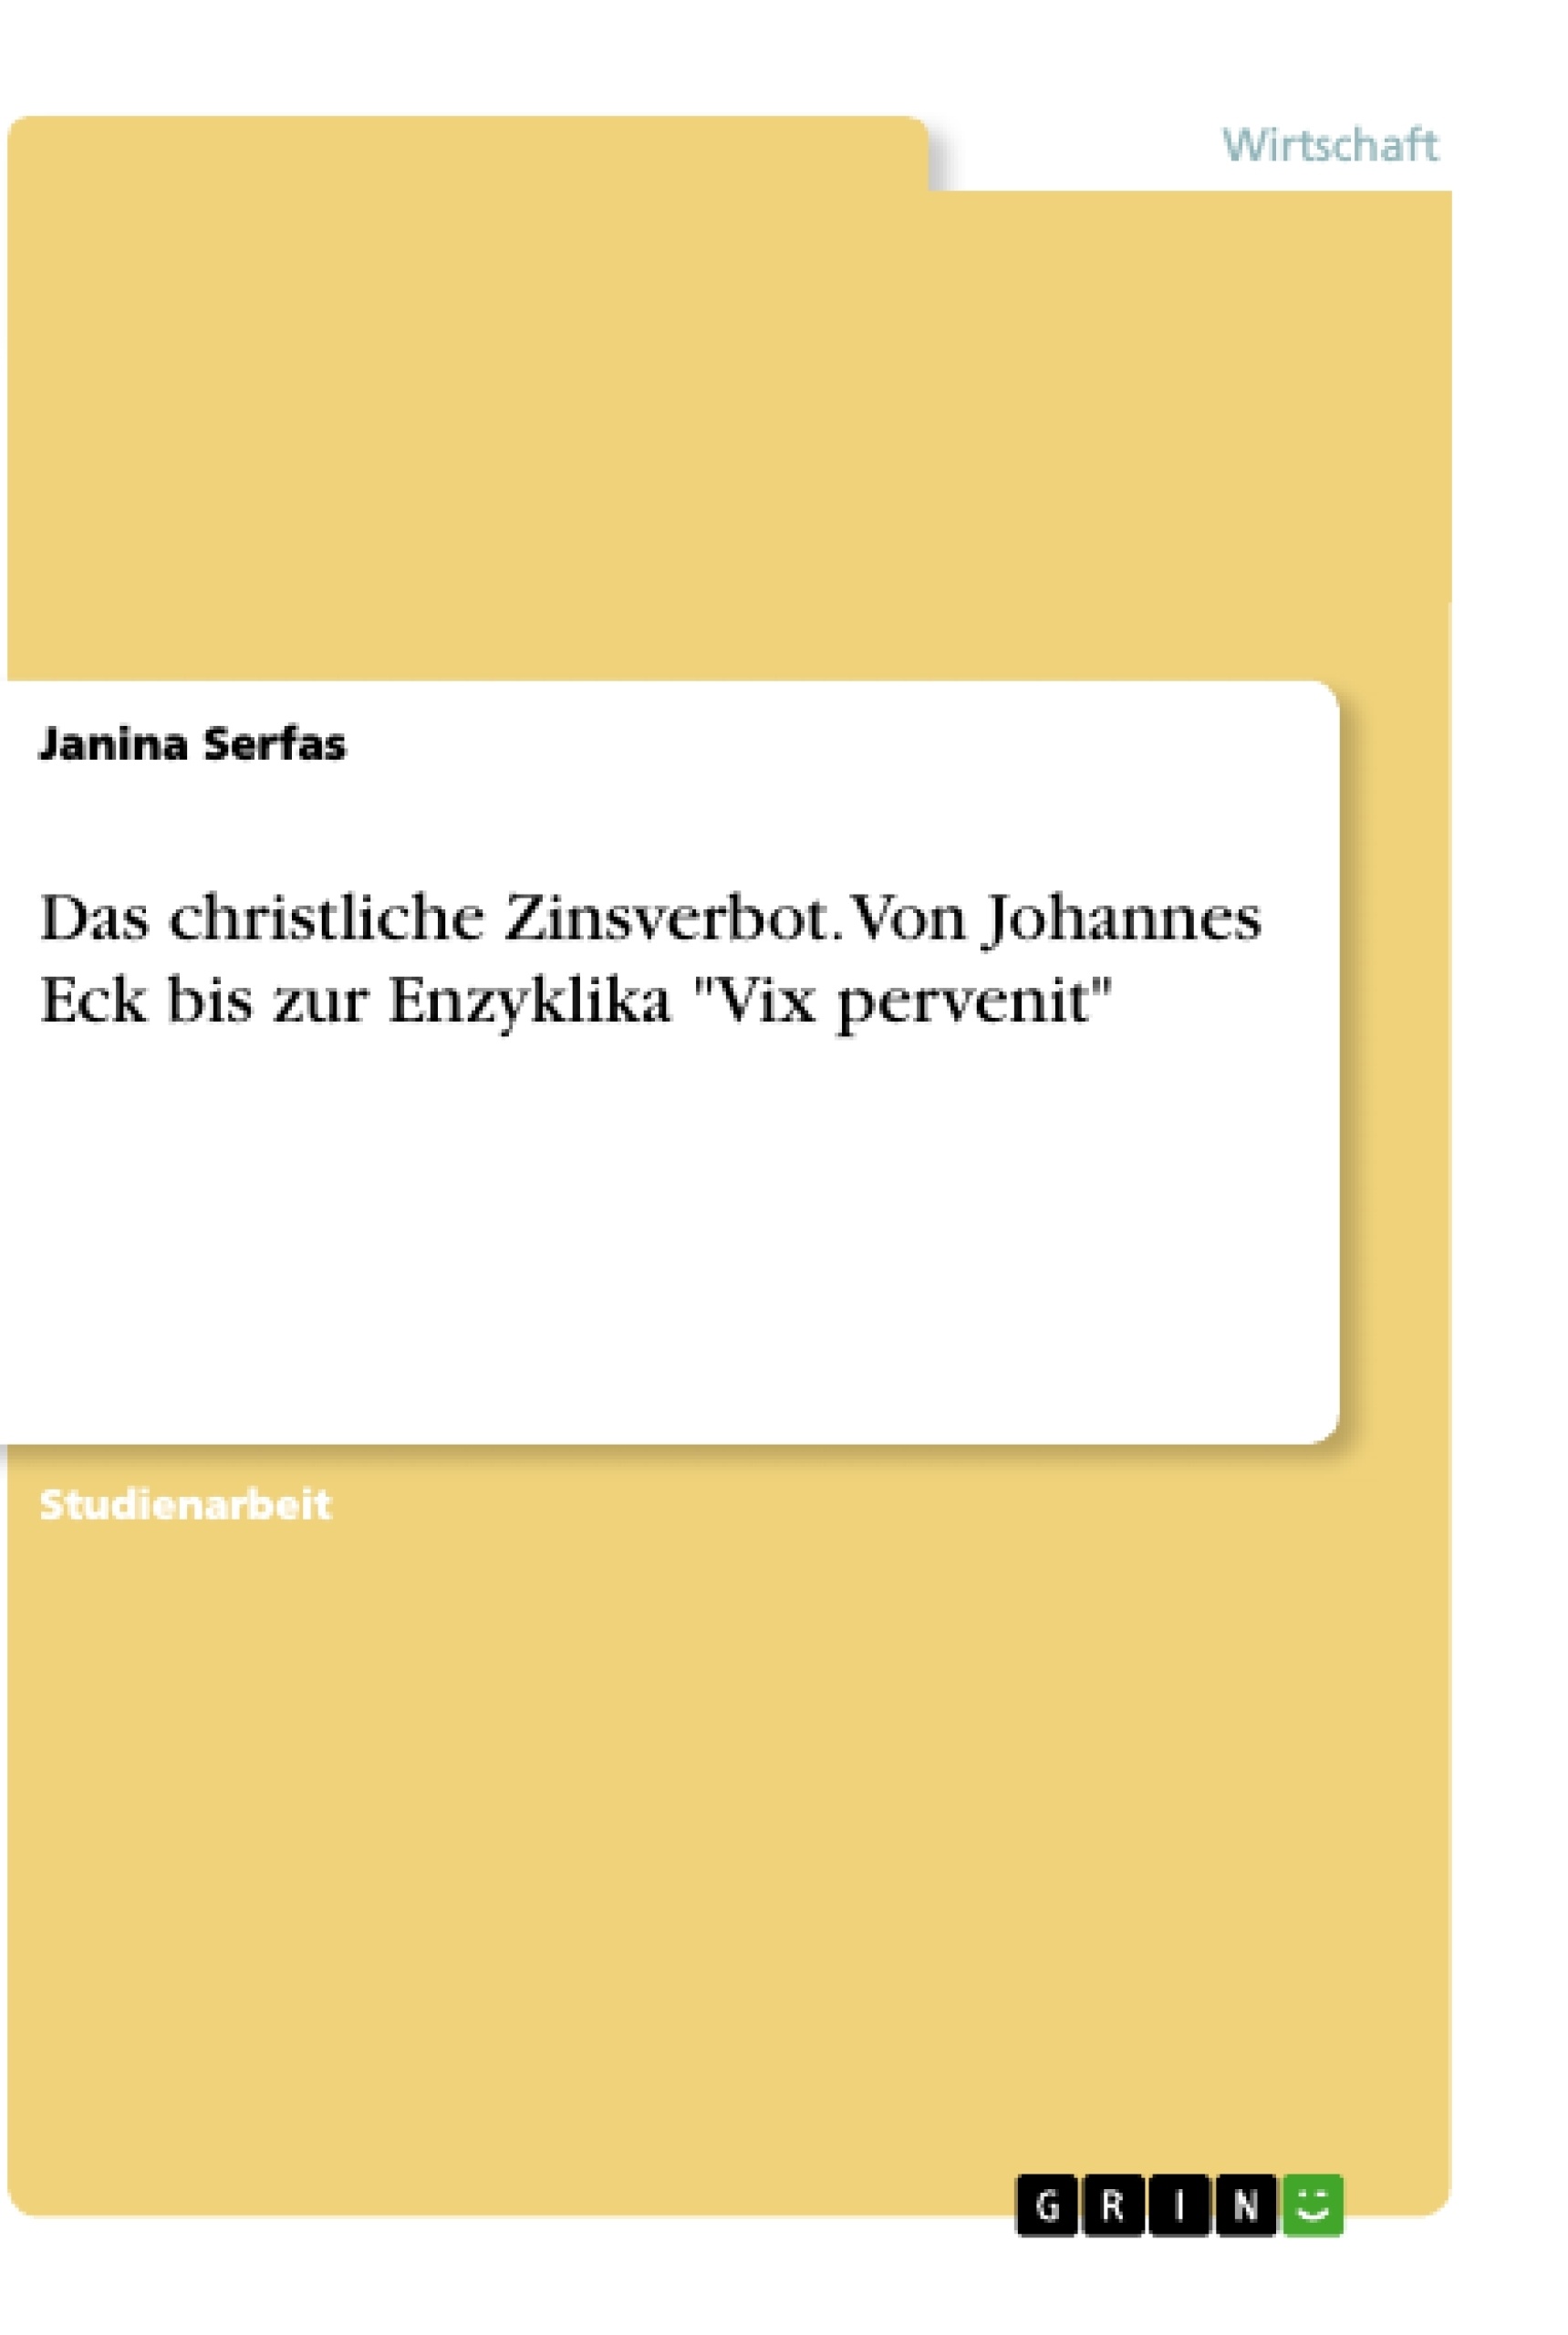 Título: Das christliche Zinsverbot. Von Johannes Eck bis zur Enzyklika "Vix pervenit"